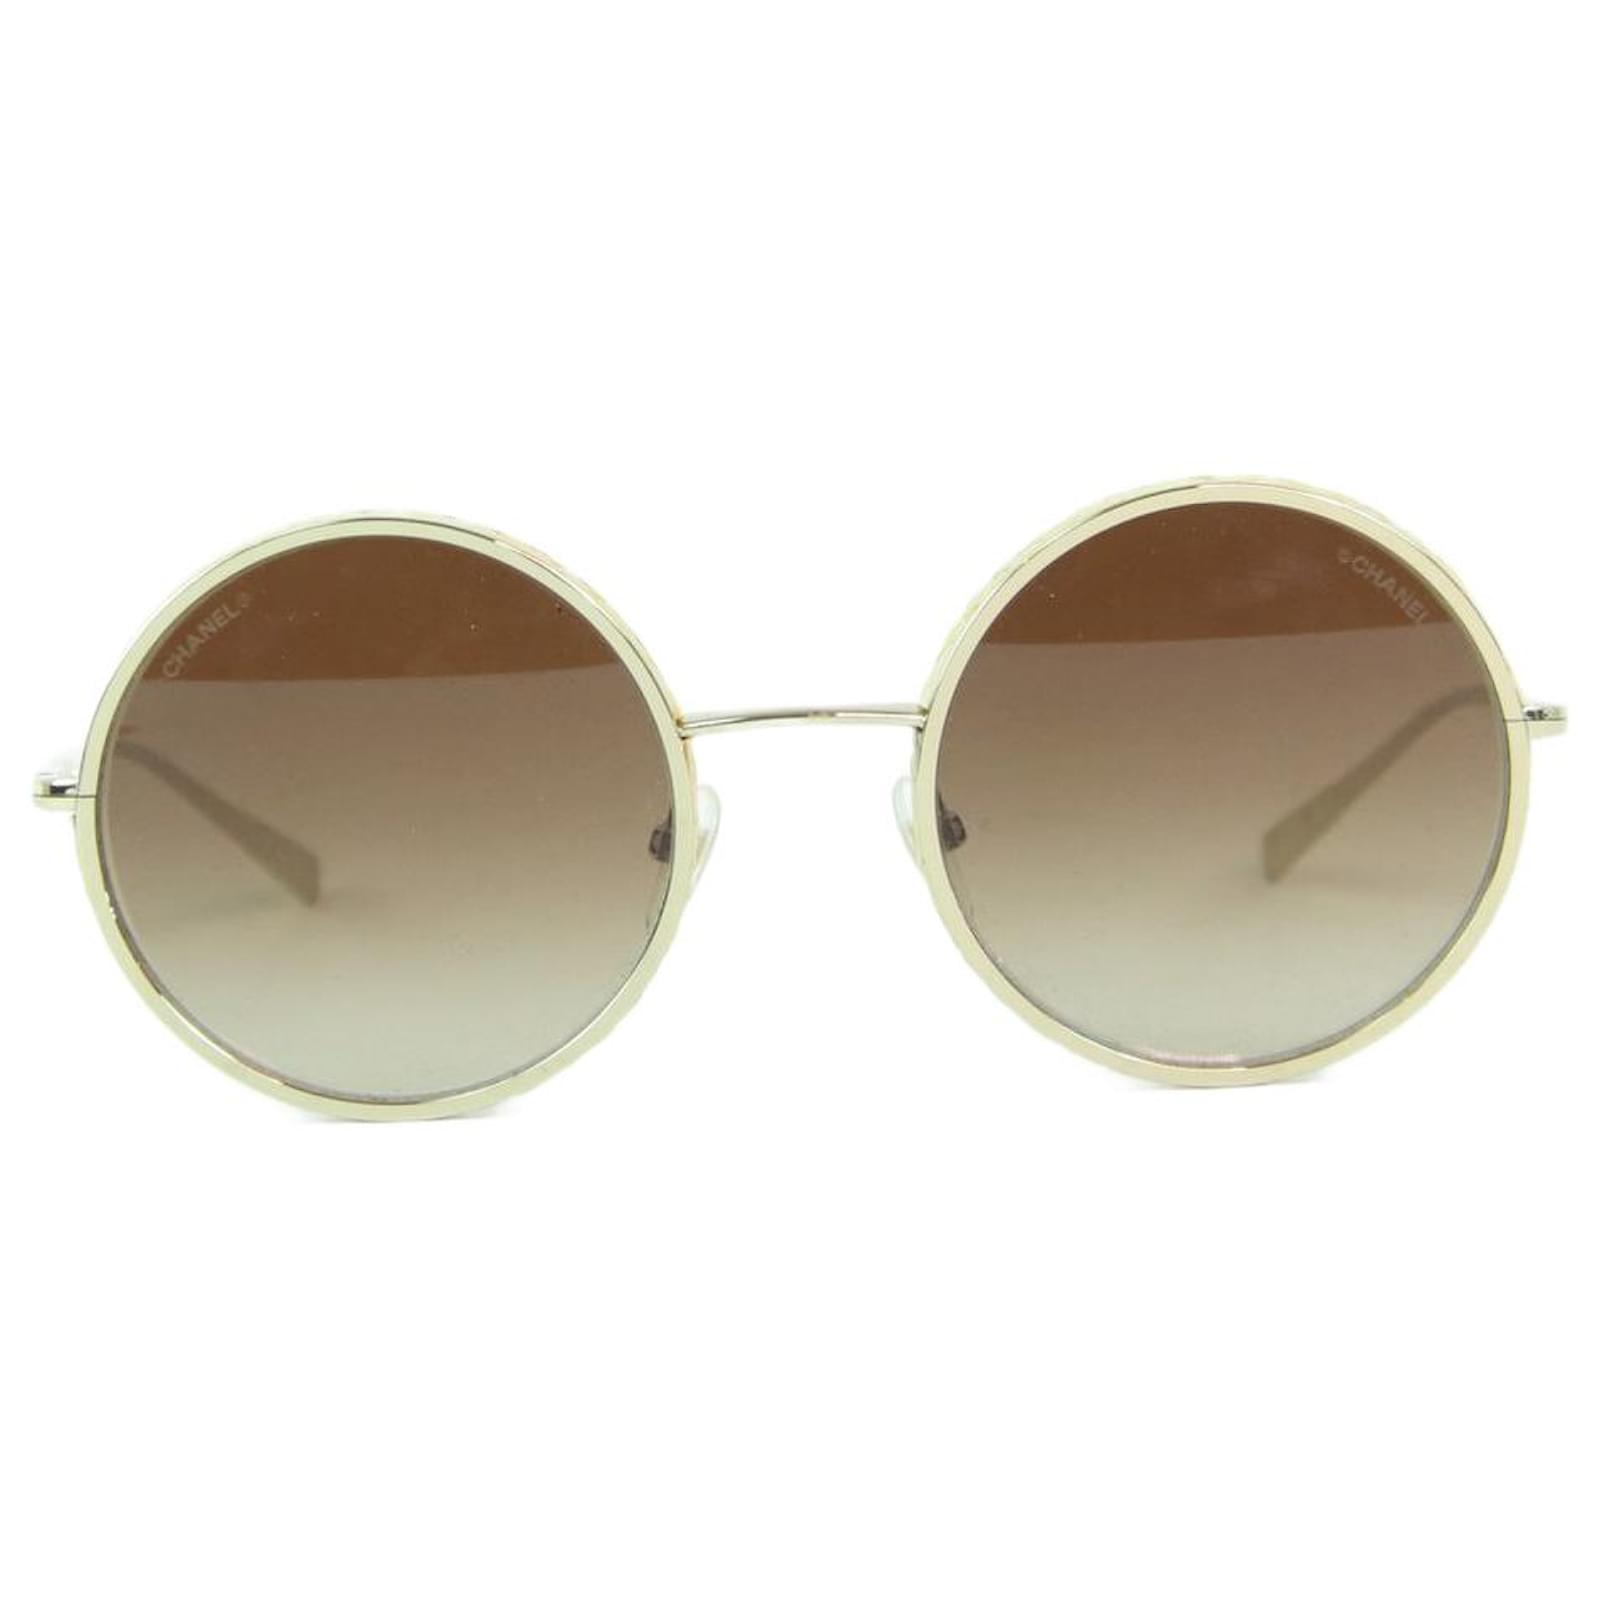 CHANEL 18k Gold Mirror Round Signature Sunglasses 4206 Gold 123863   FASHIONPHILE